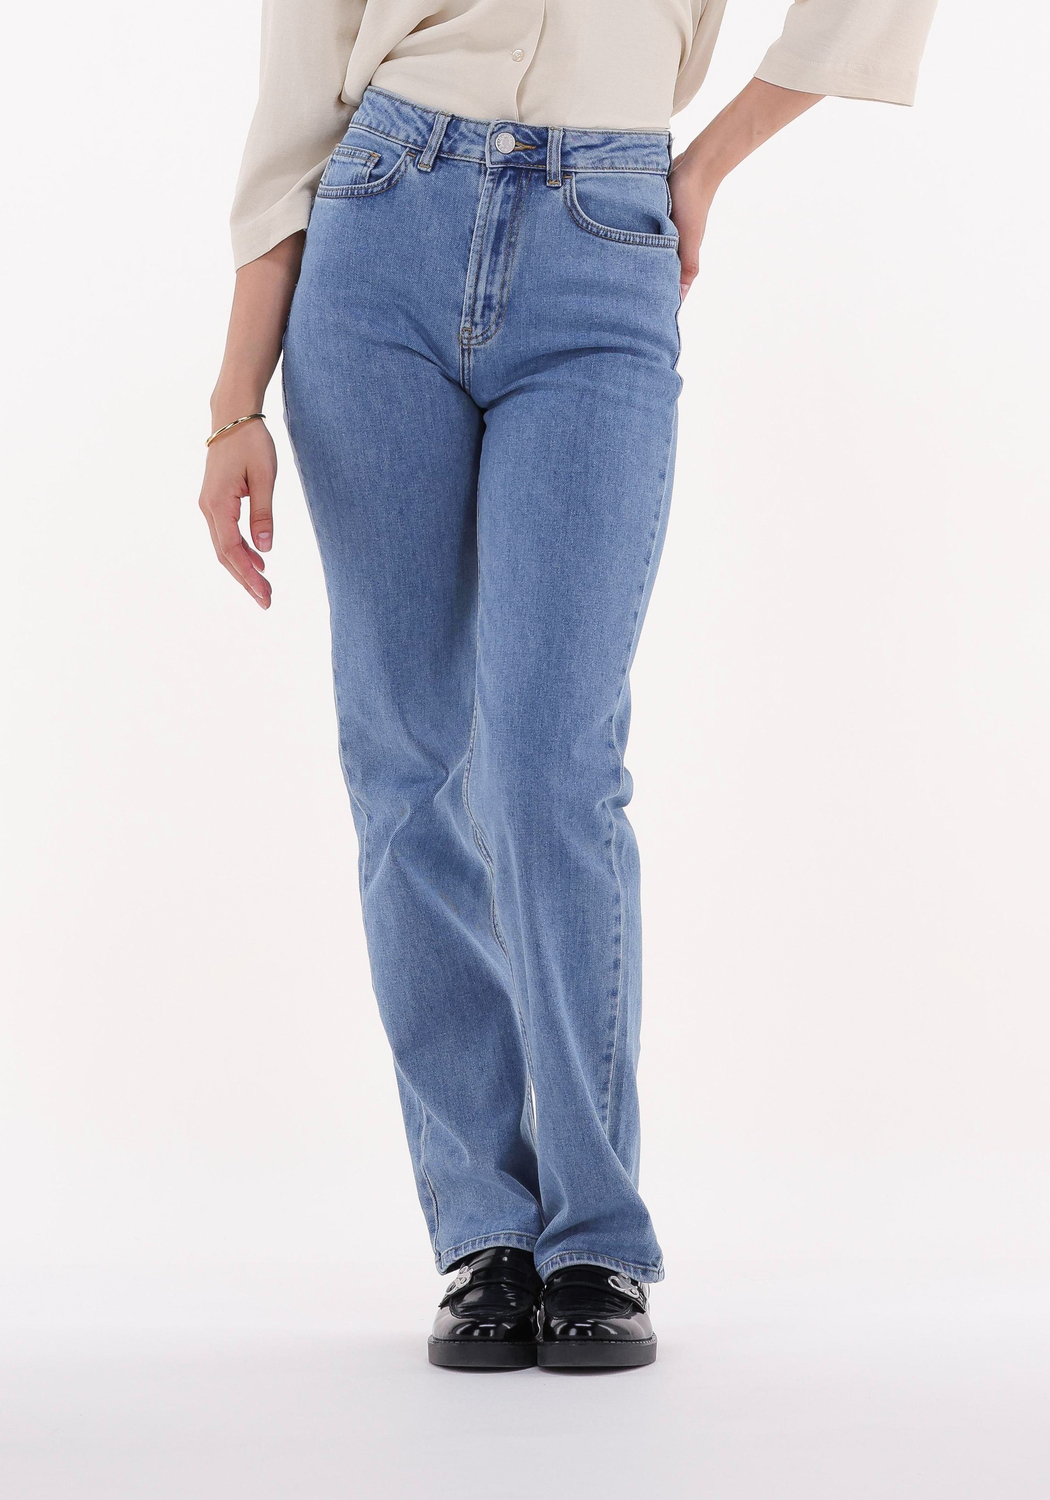 Modström Denim Straight Leg Jeans Rubie Jeans in Blau Damen Bekleidung Jeans Jeans mit gerader Passform 